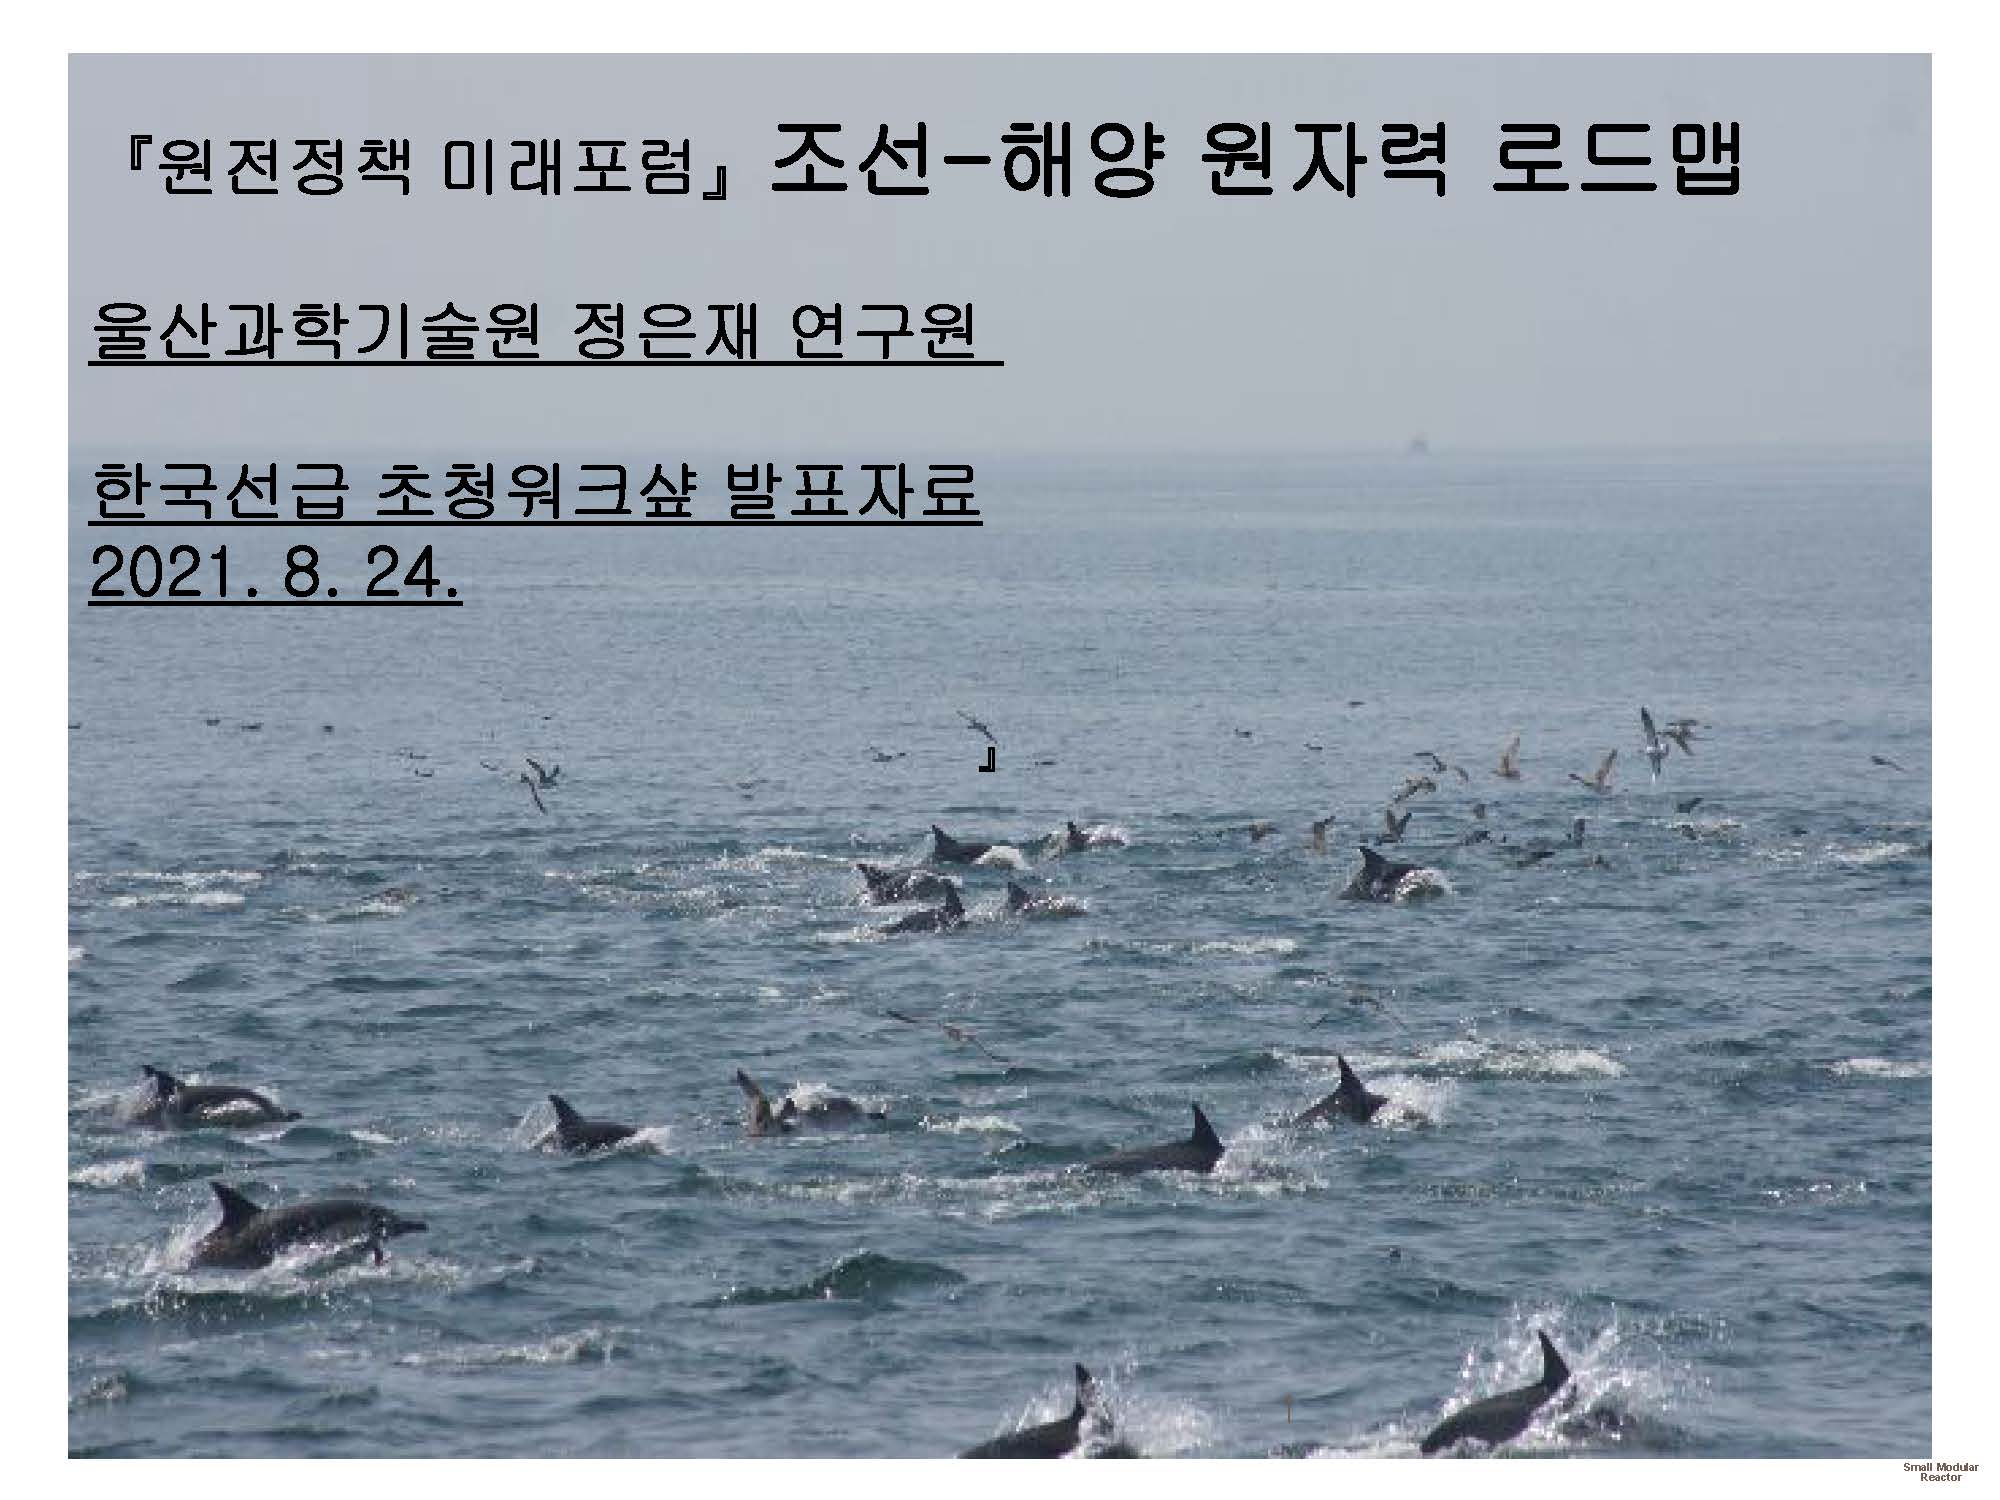 조선ㆍ해양 원자력 로드맵